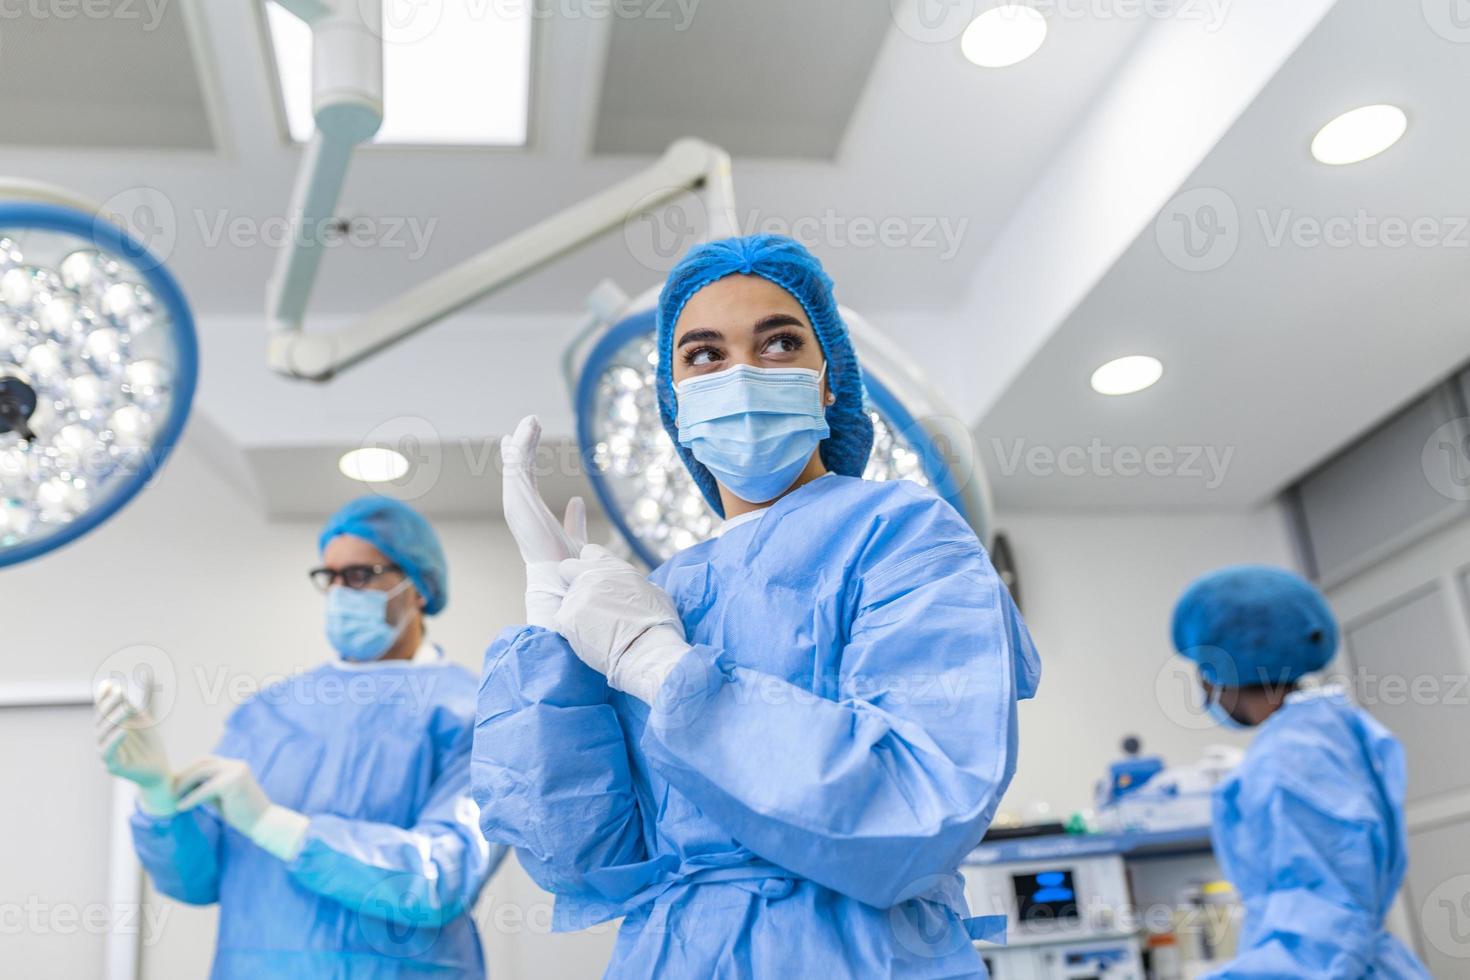 portrait de femme chirurgien en uniforme chirurgical en salle d'opération à la recherche de suite. médecin en gommages et masque médical dans la salle d'opération de l'hôpital moderne. photo